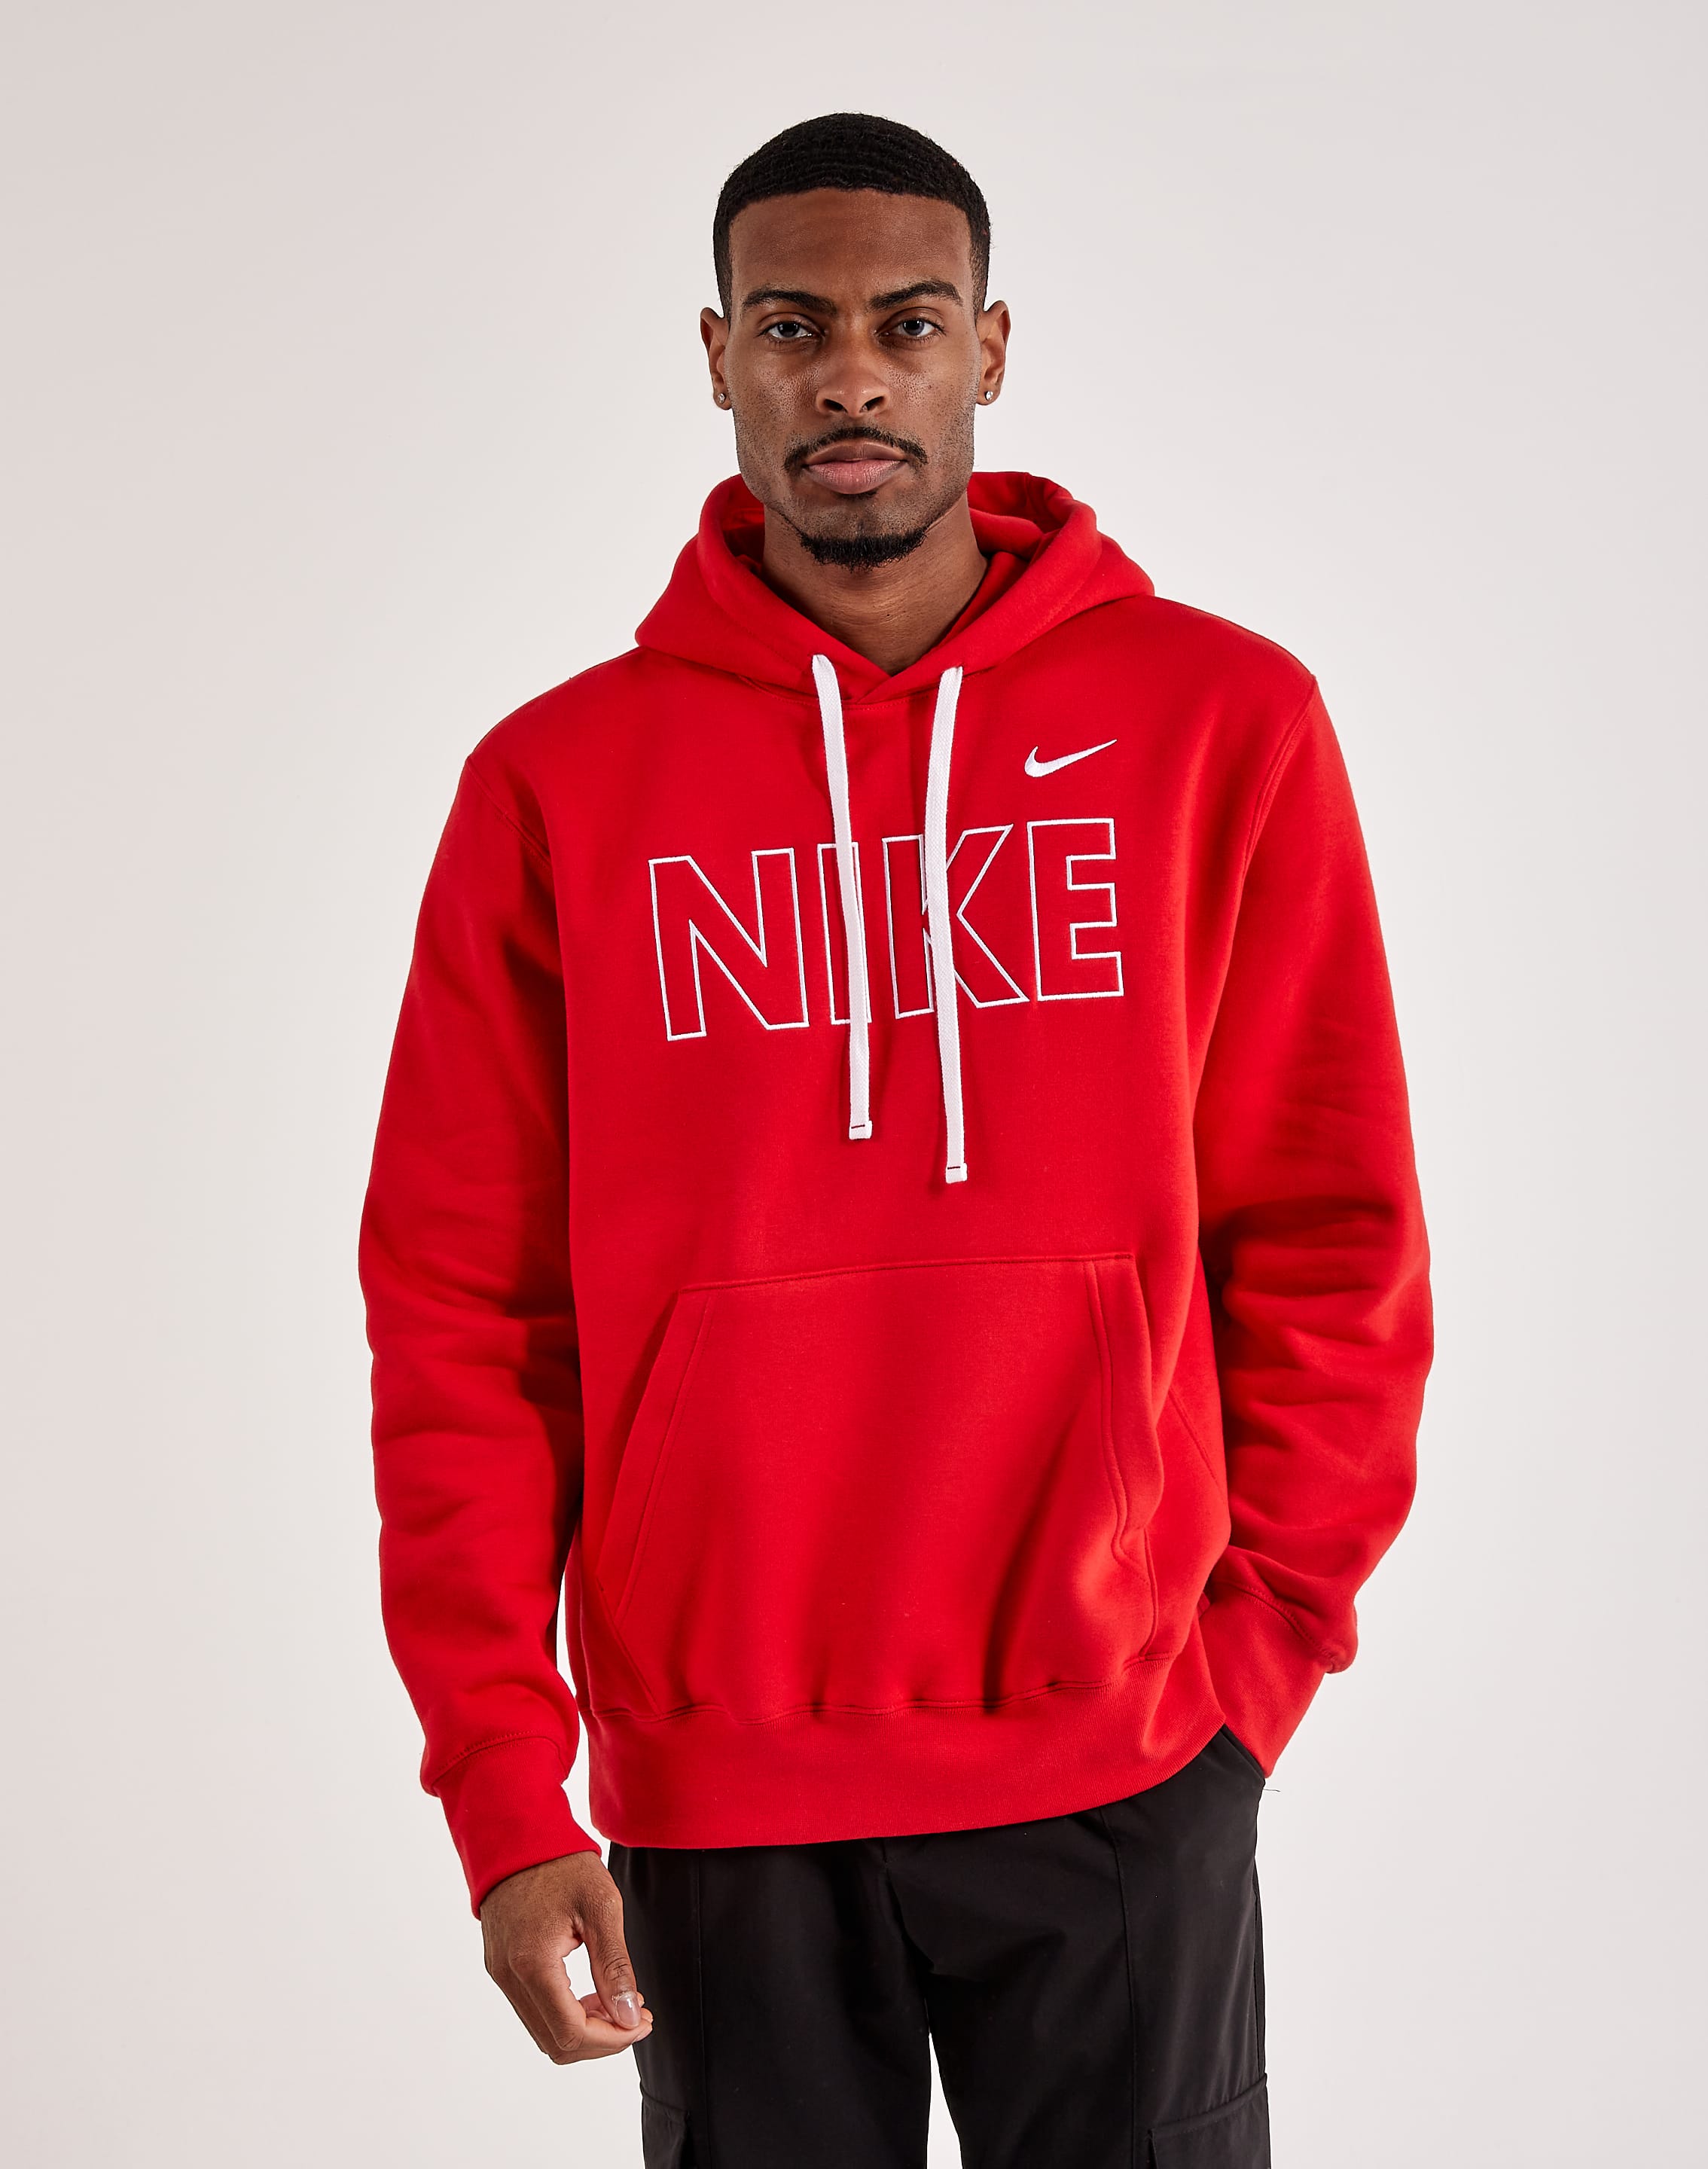 Nike Club Fleece Pullover Hoodie